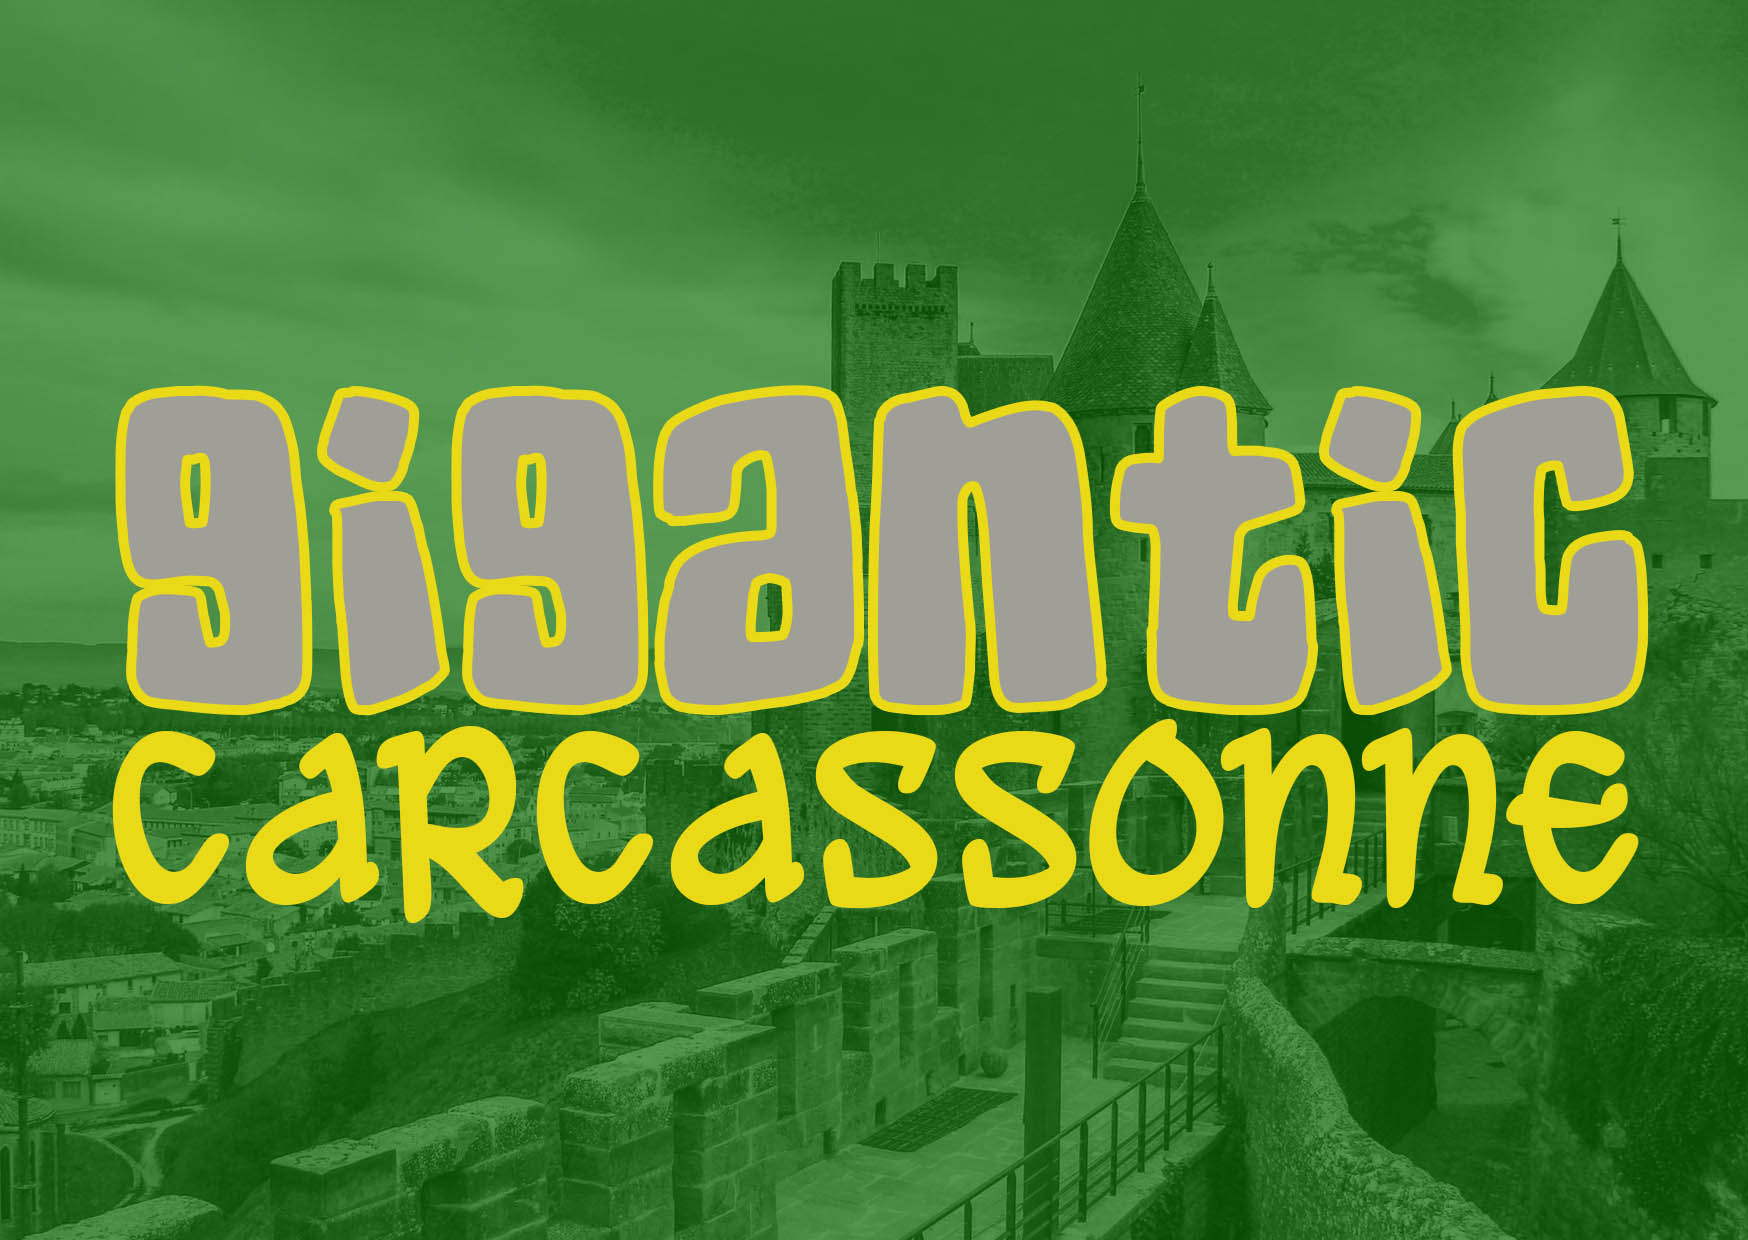 Gigantic Carcassonne